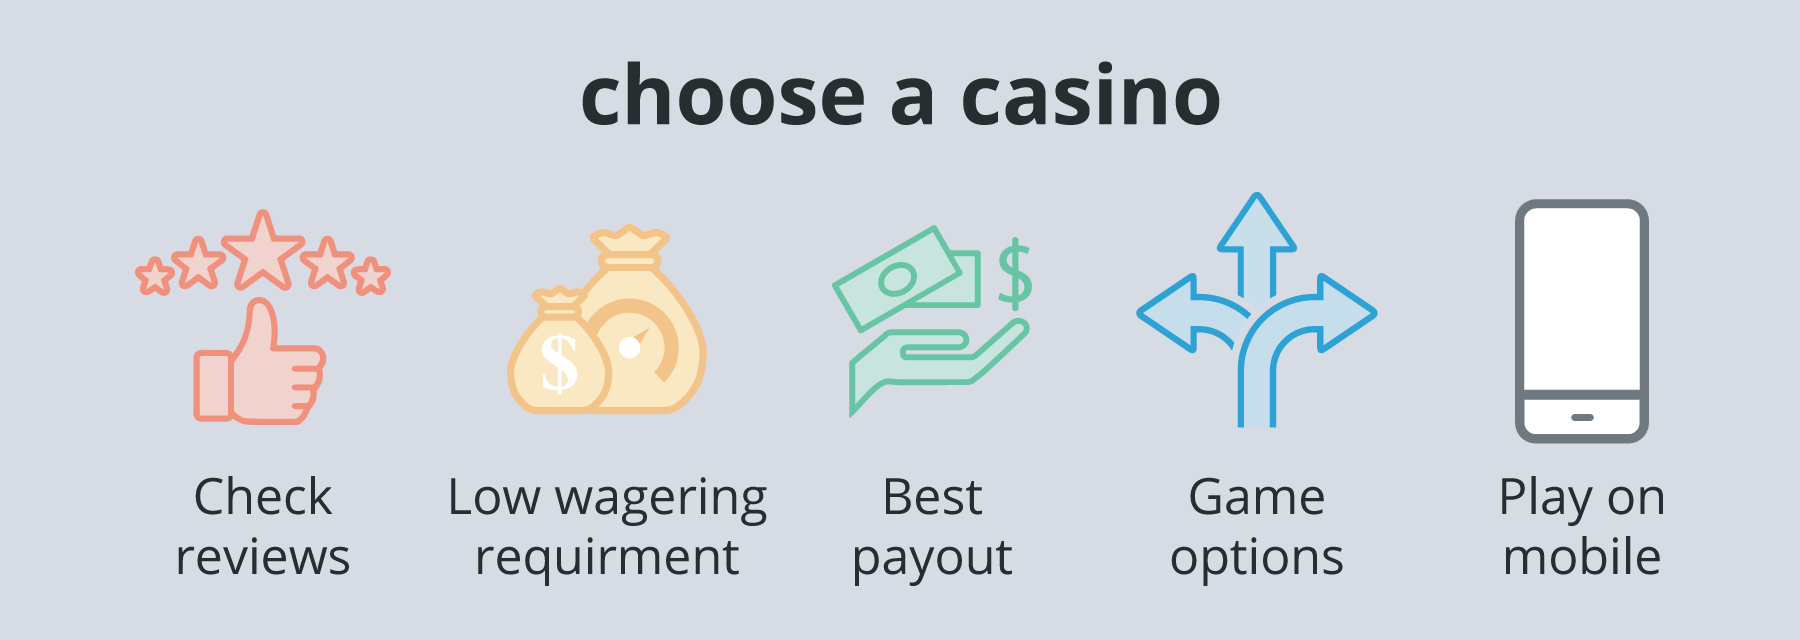 Choosing the best casino UAE online casino UAE - Emirates Casino - UAE Casinos 